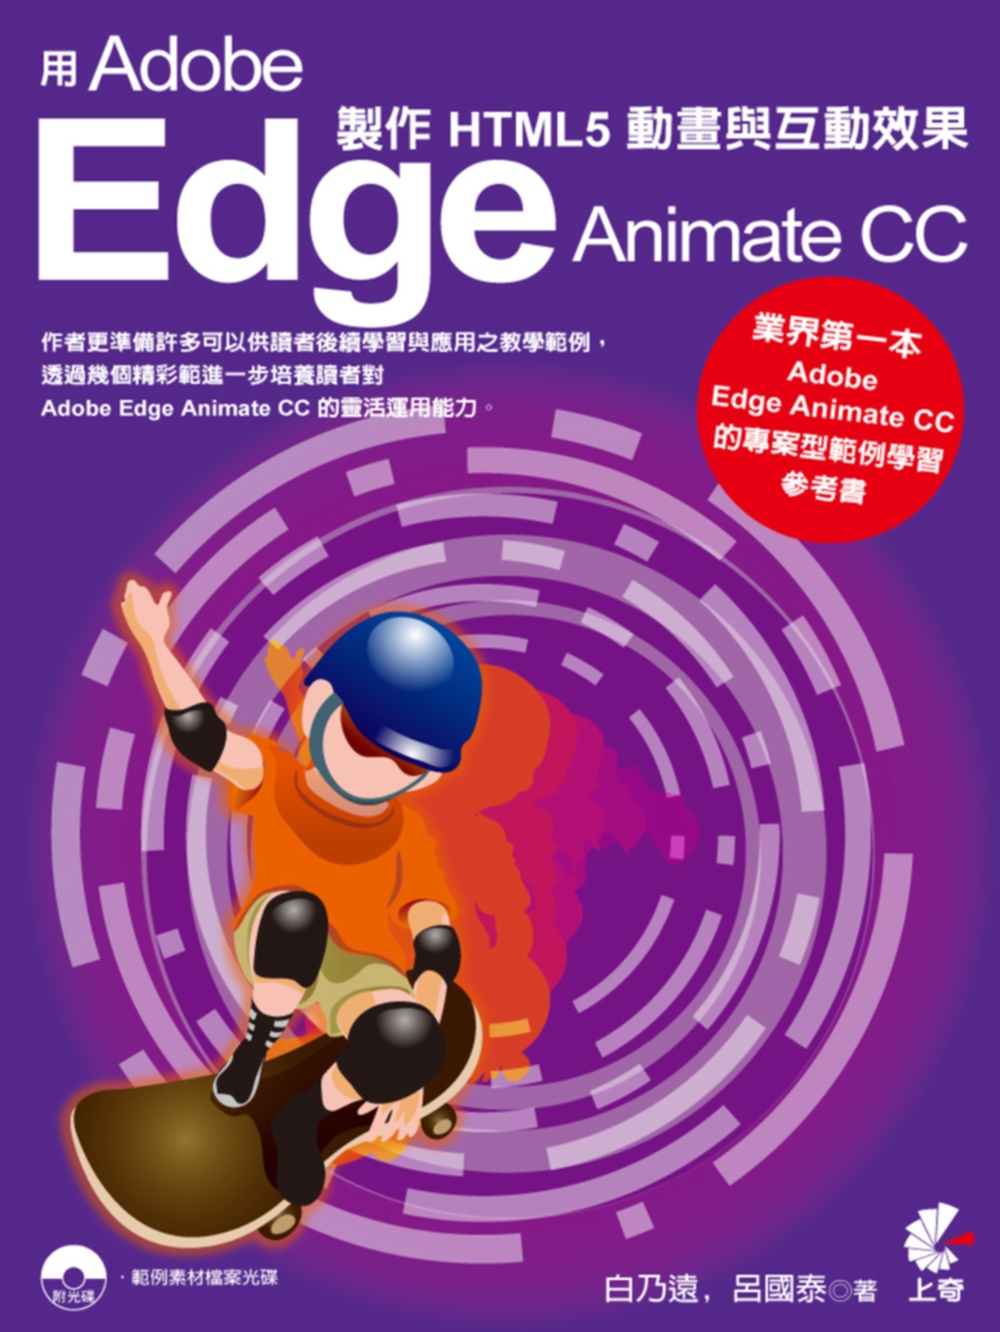 用Adobe Edge Animate CC 製作HTML5...